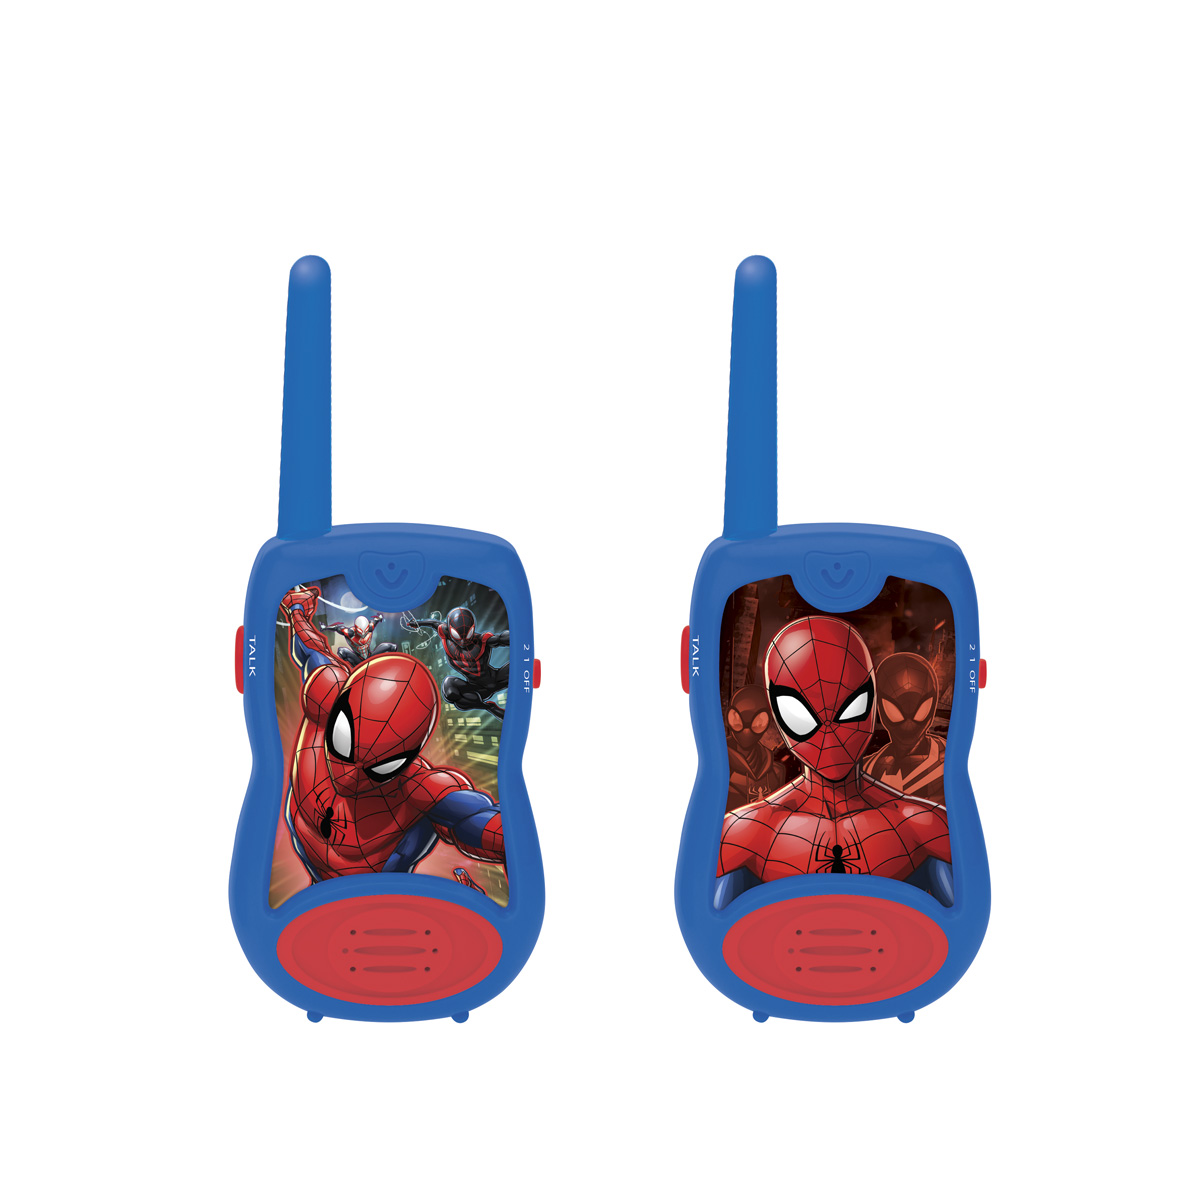 LEXIBOOK Reichweite Blau/Rot 100 Meter Walky Talky Spider-Man